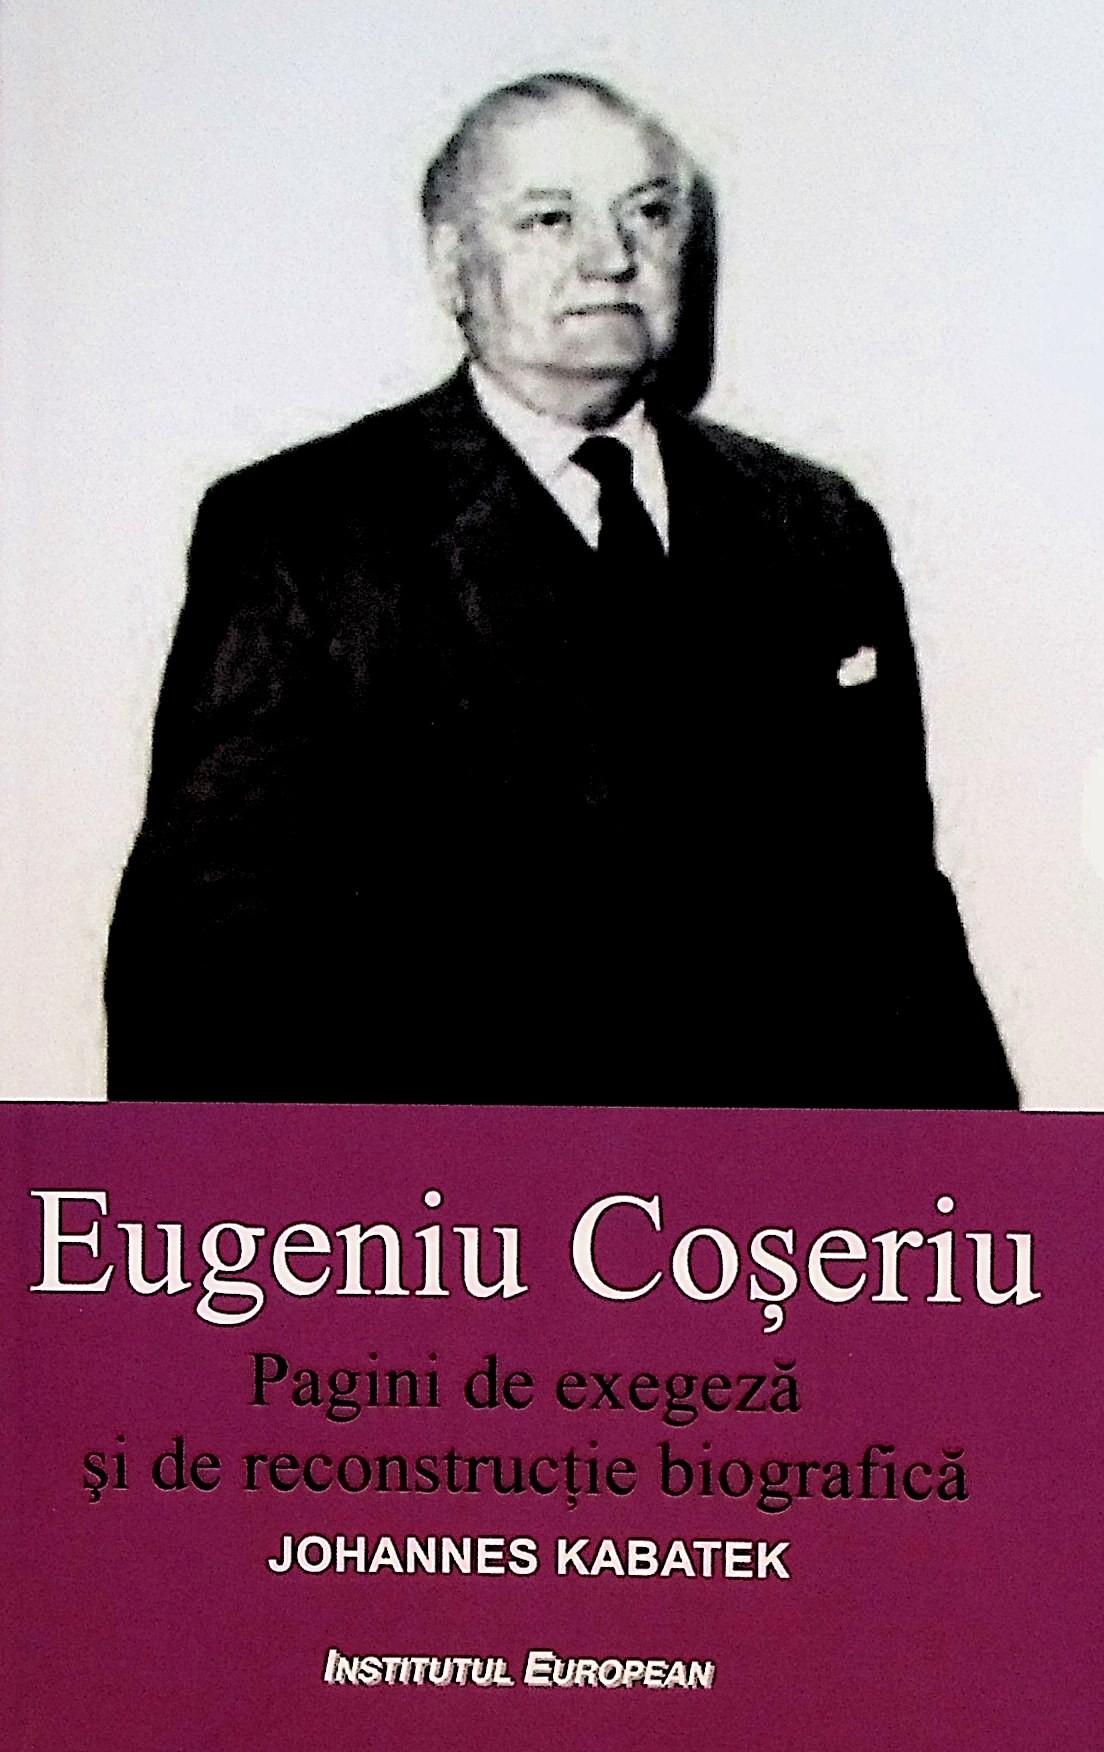 Eugeniu Coseriu. Pagini de exegeza si de reconstructie biografica | Johannes Kabatek carturesti 2022